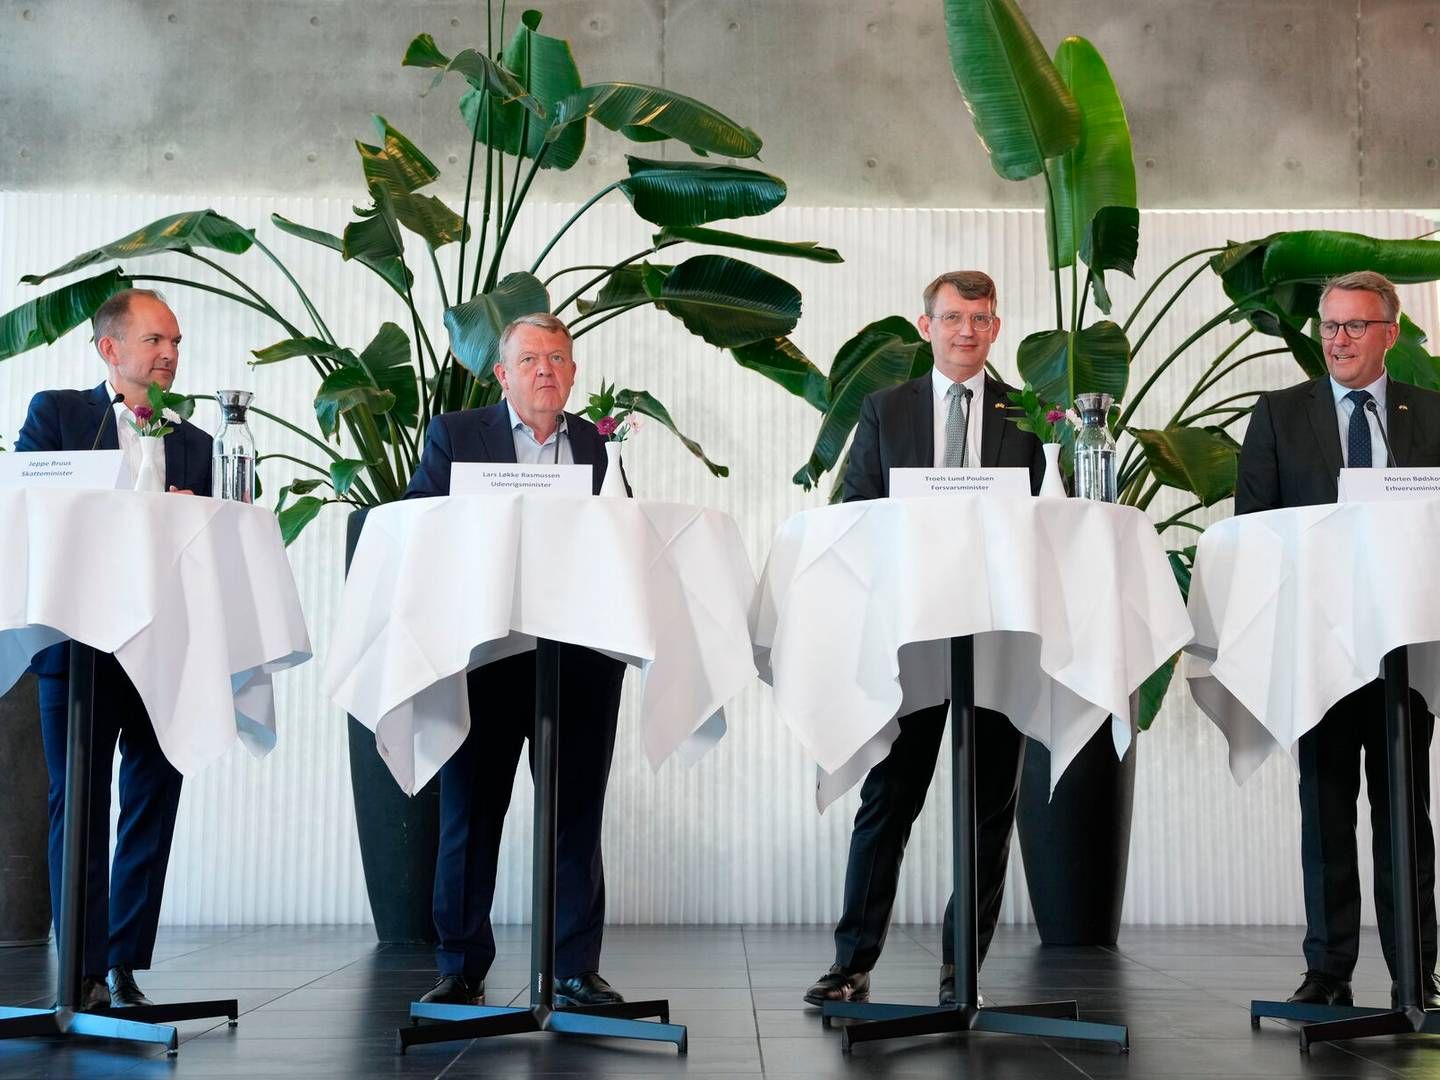 Regeringen fremlagde erhvervsudspillet på et pressemøde hos medicinalselskabet Lundbeck i Valby.